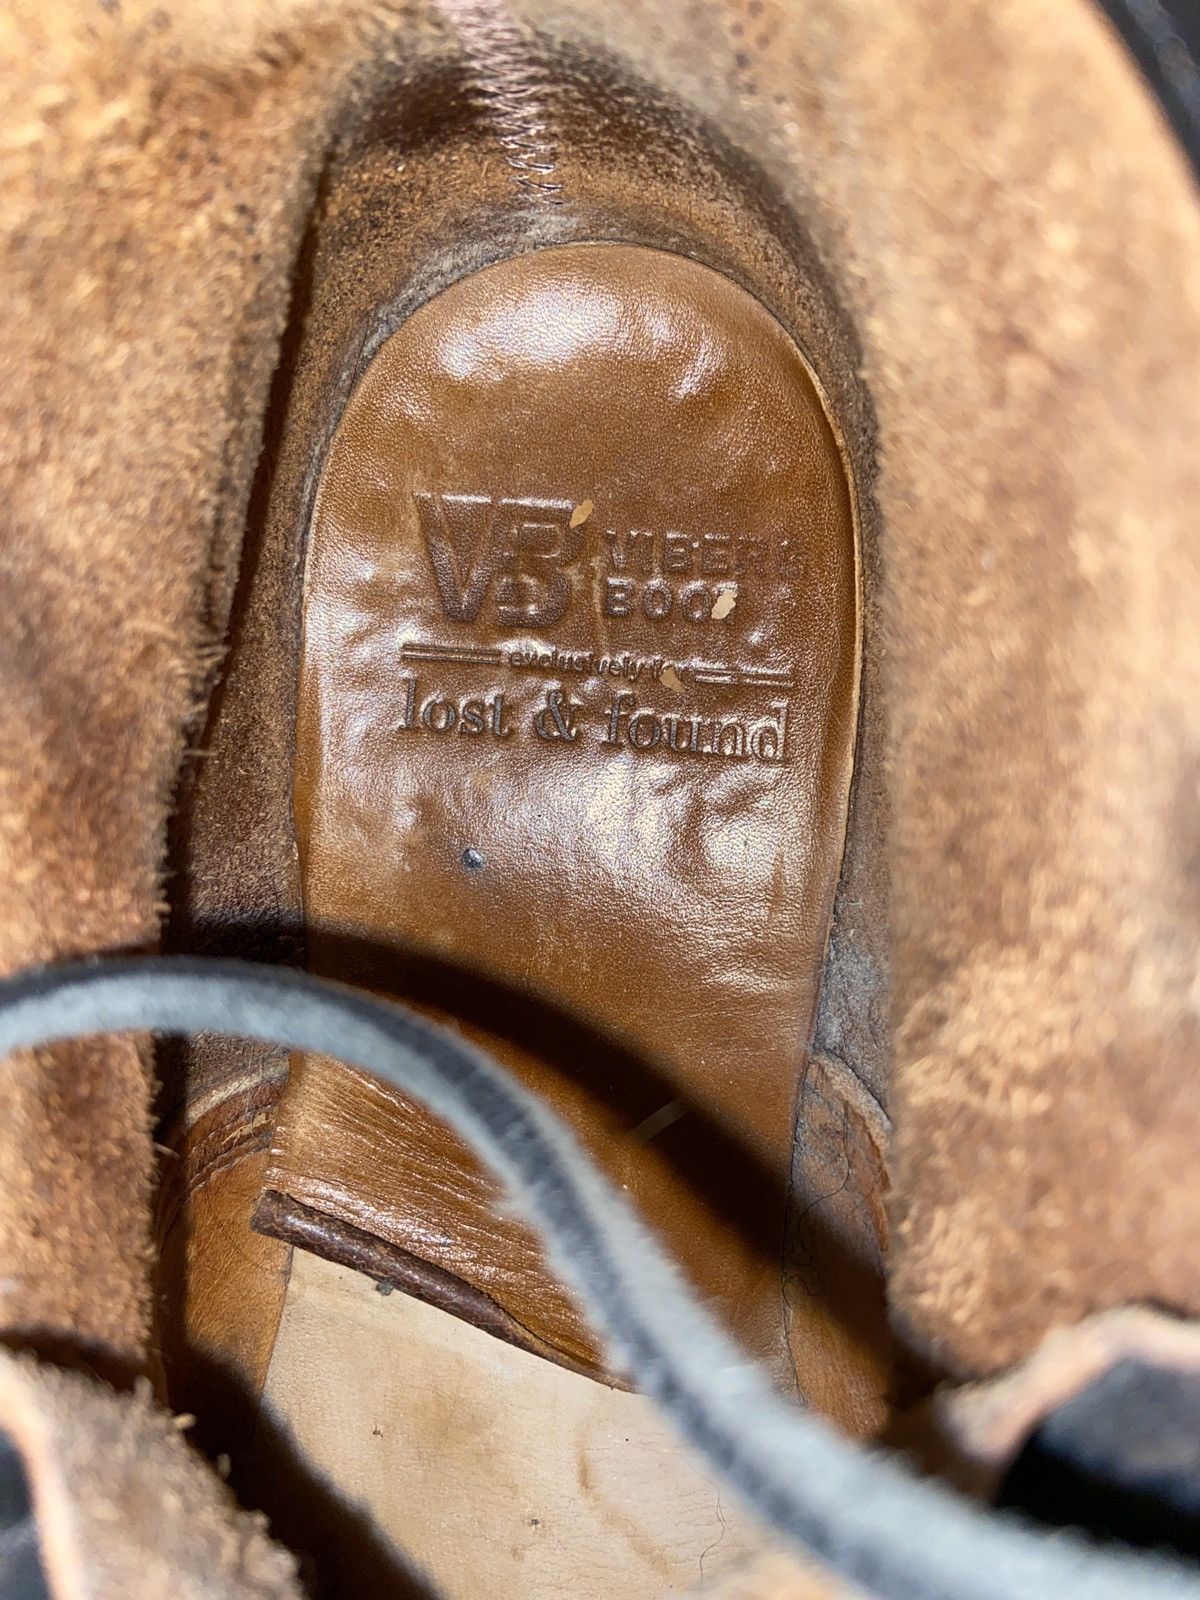 Viberg Viberg Black Leather Work Boots Size US 10 / EU 43 - 4 Thumbnail